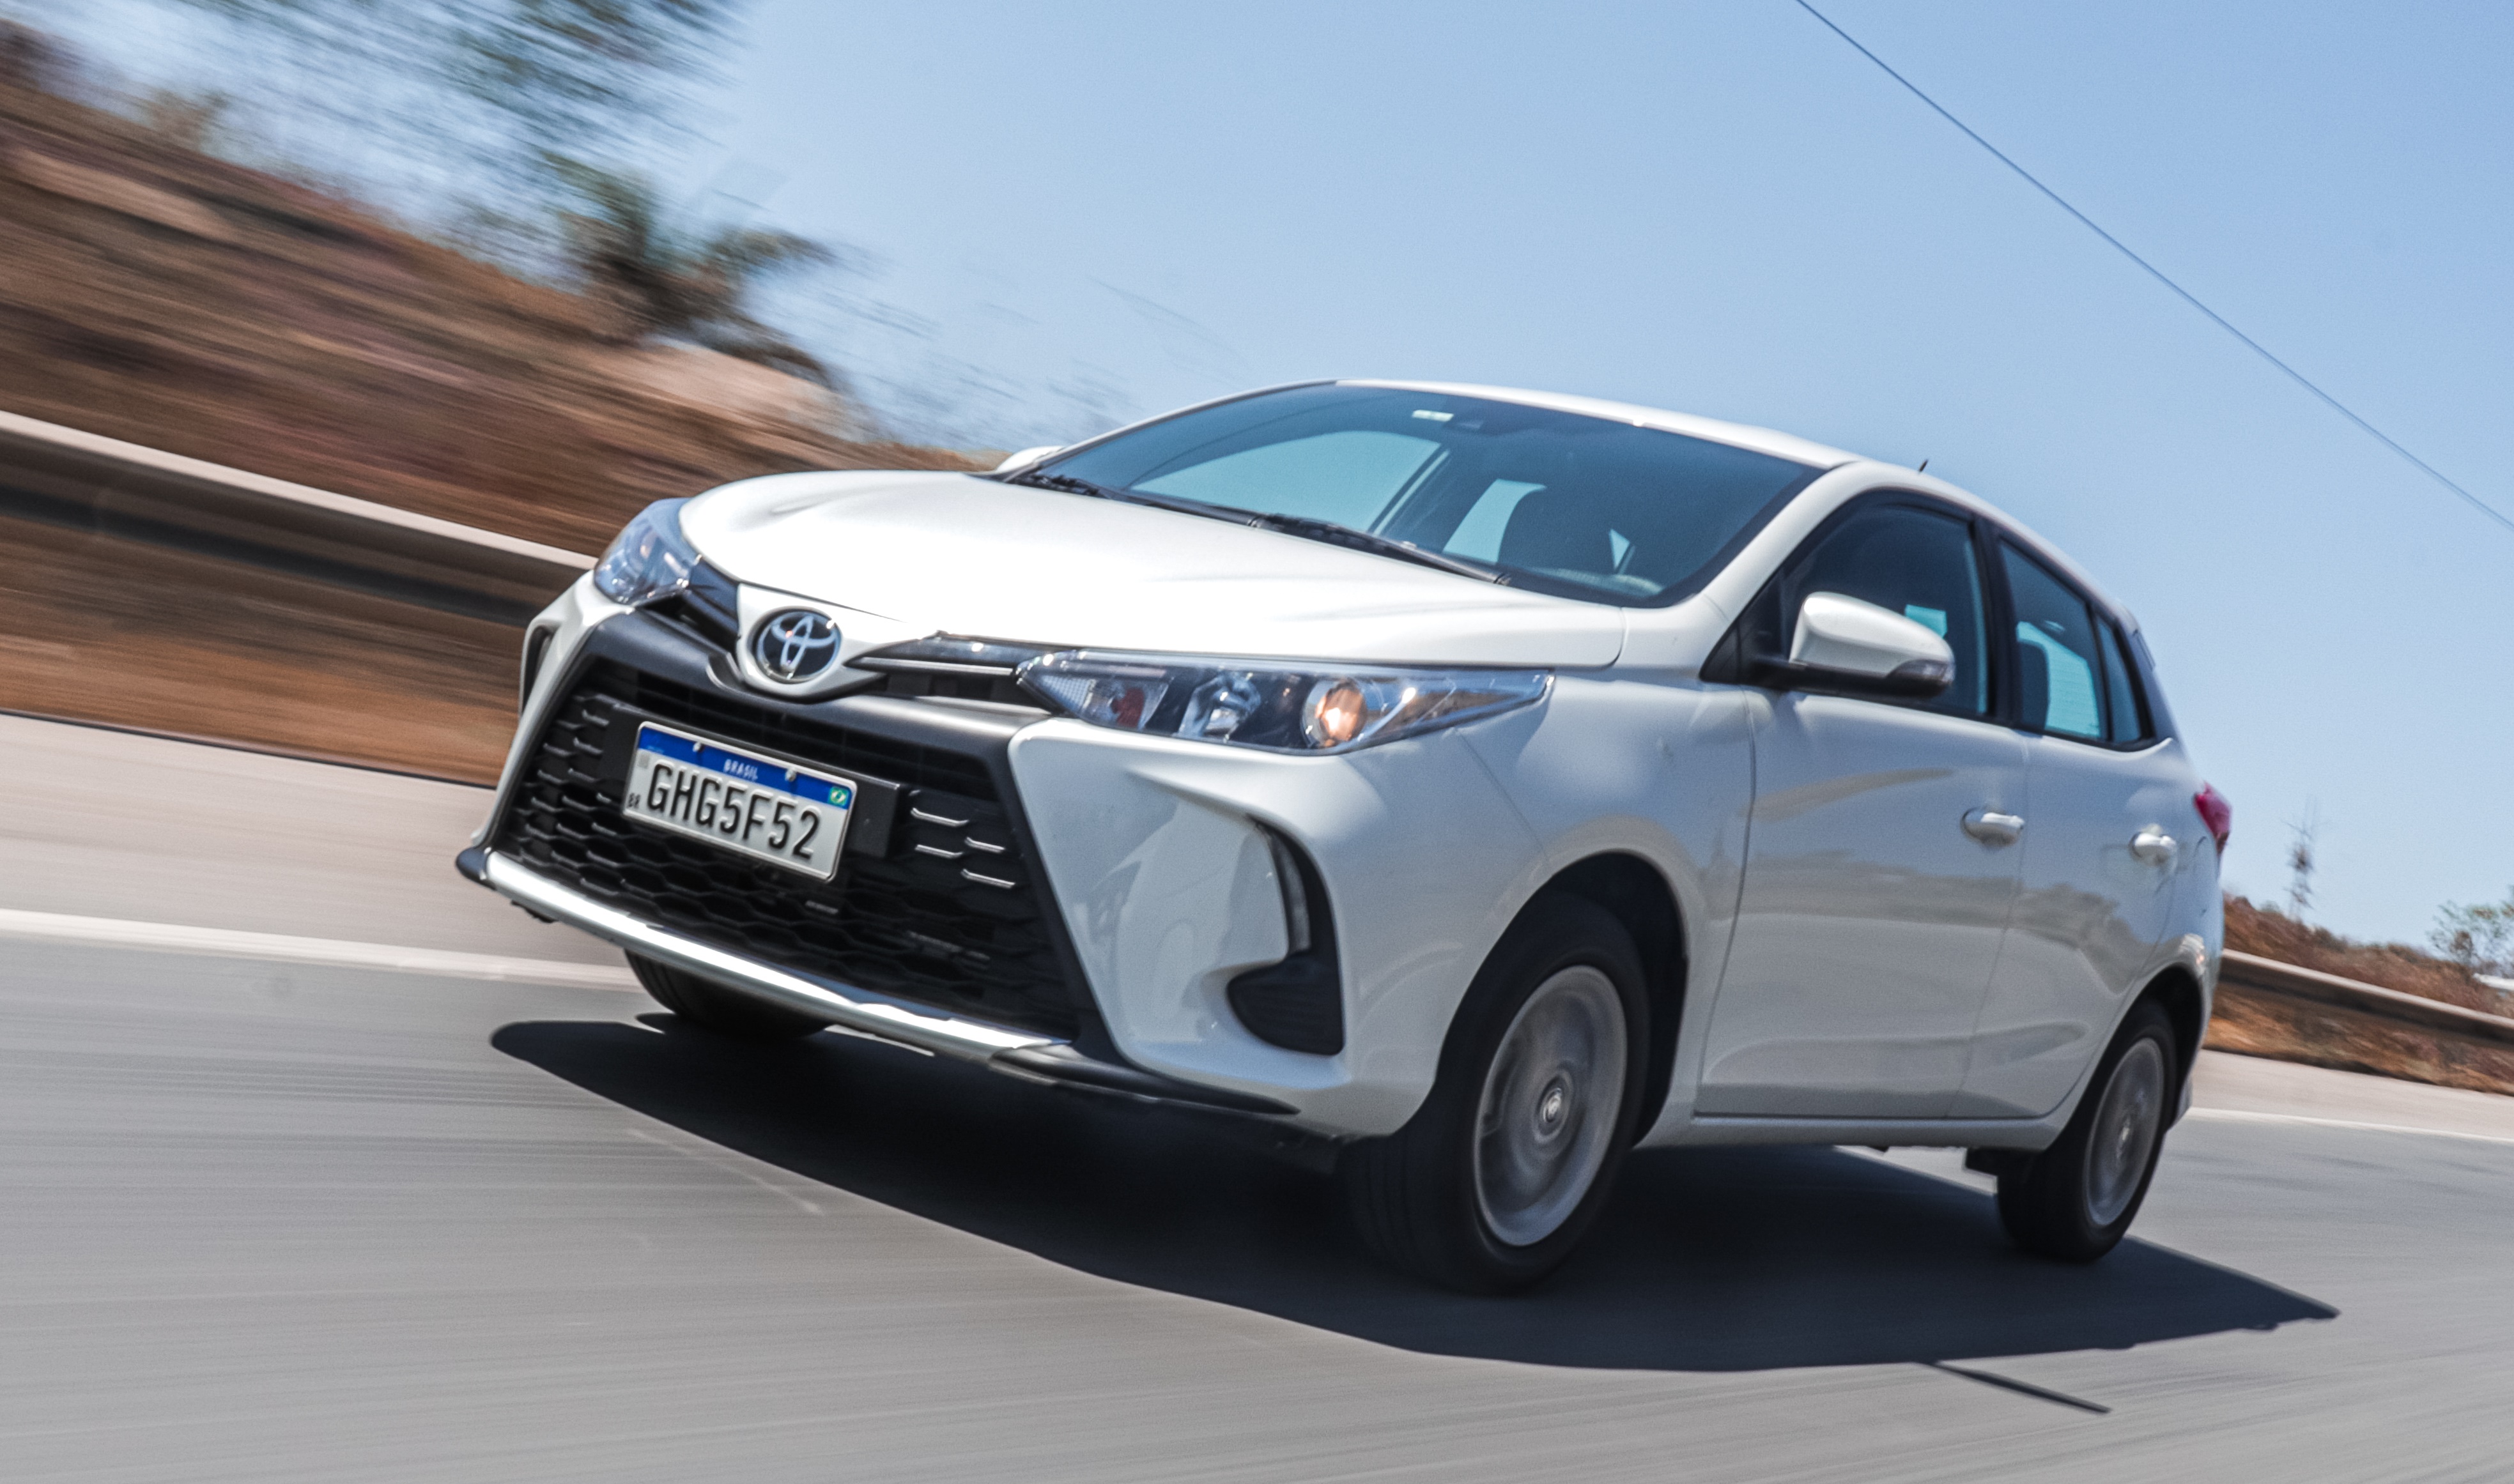 Toyota Yaris hatch XS 1.5 automático branco na estrada em movimento; para matéria de carros automáticos mais baratos do Brasil em 2023.